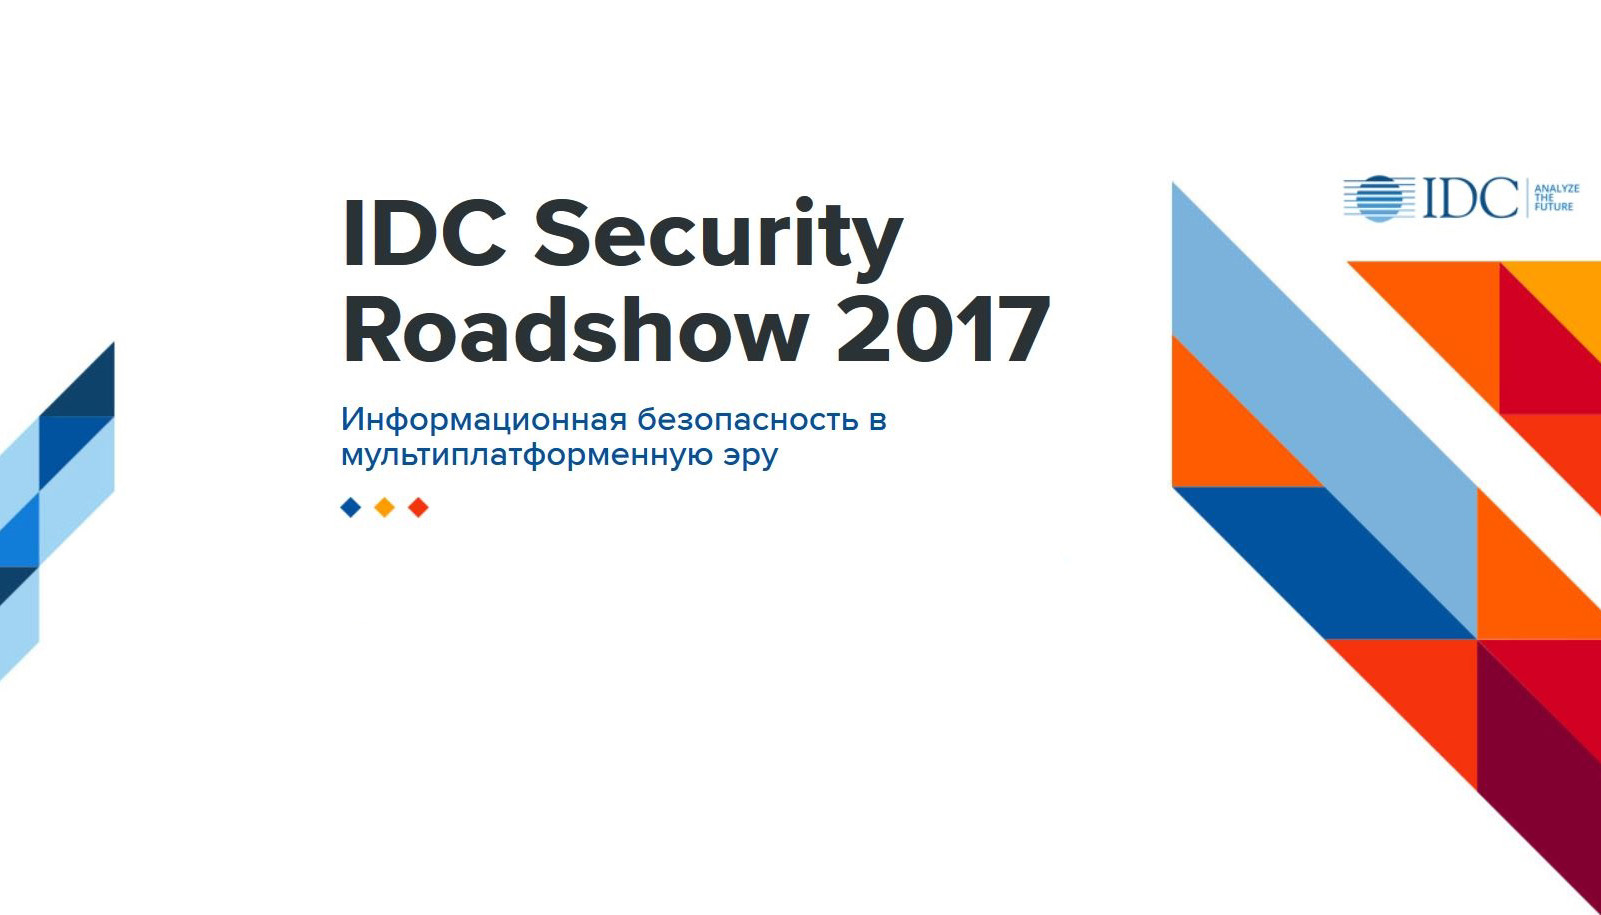 IDC Security Roadshow 2017 «Информационная безопасность в мультиплатформенную эру»